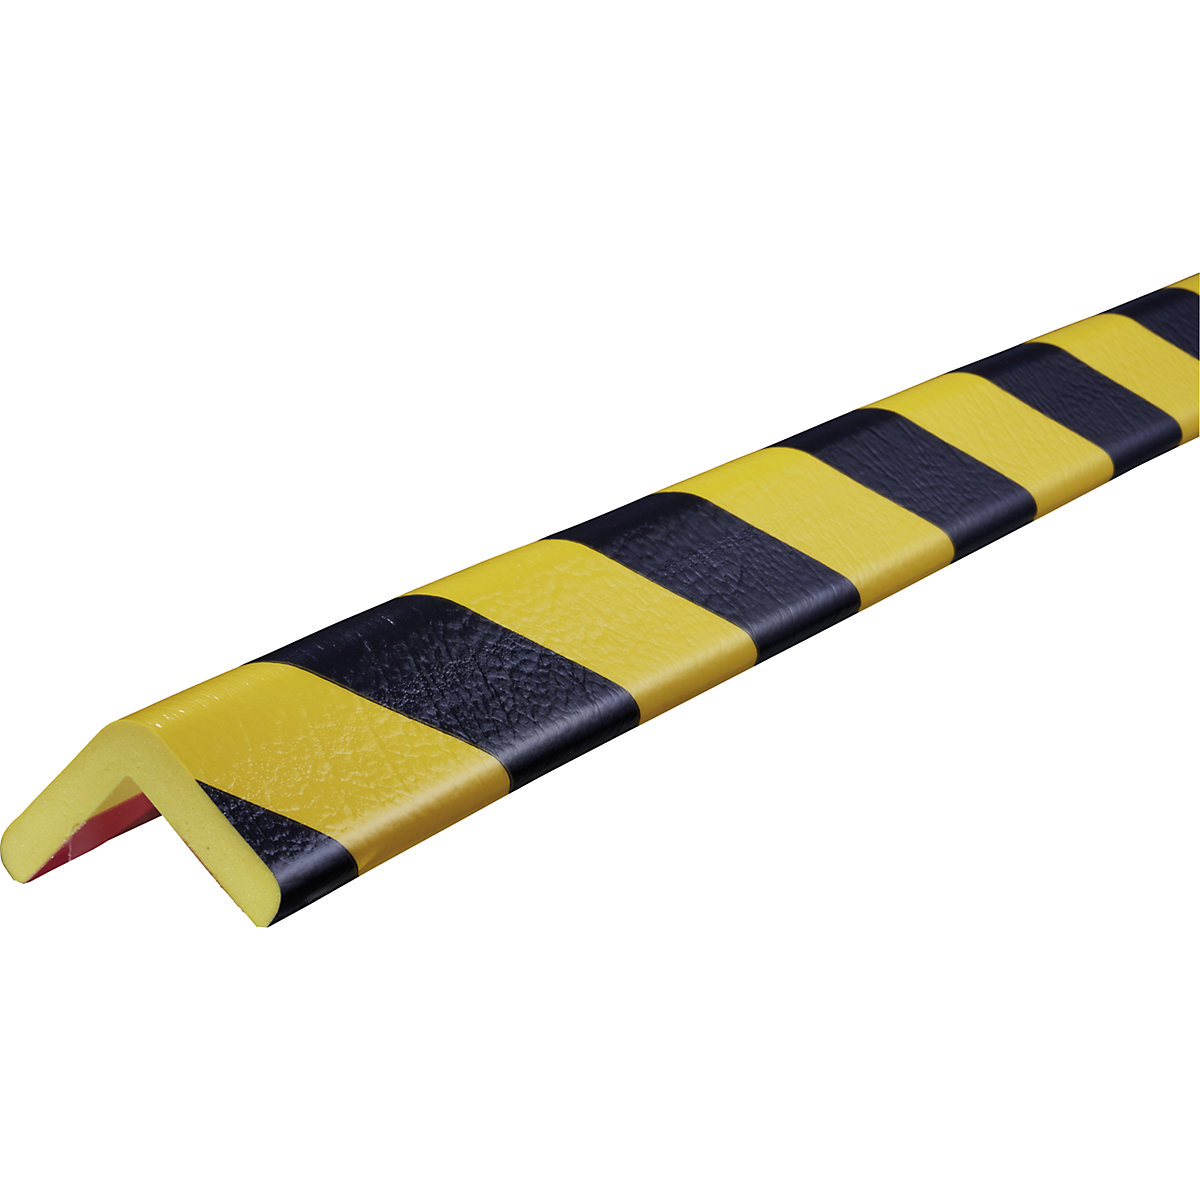 Knuffi®-hoekbescherming – SHG, type H, stuk van 1 m, zwart/geel-22